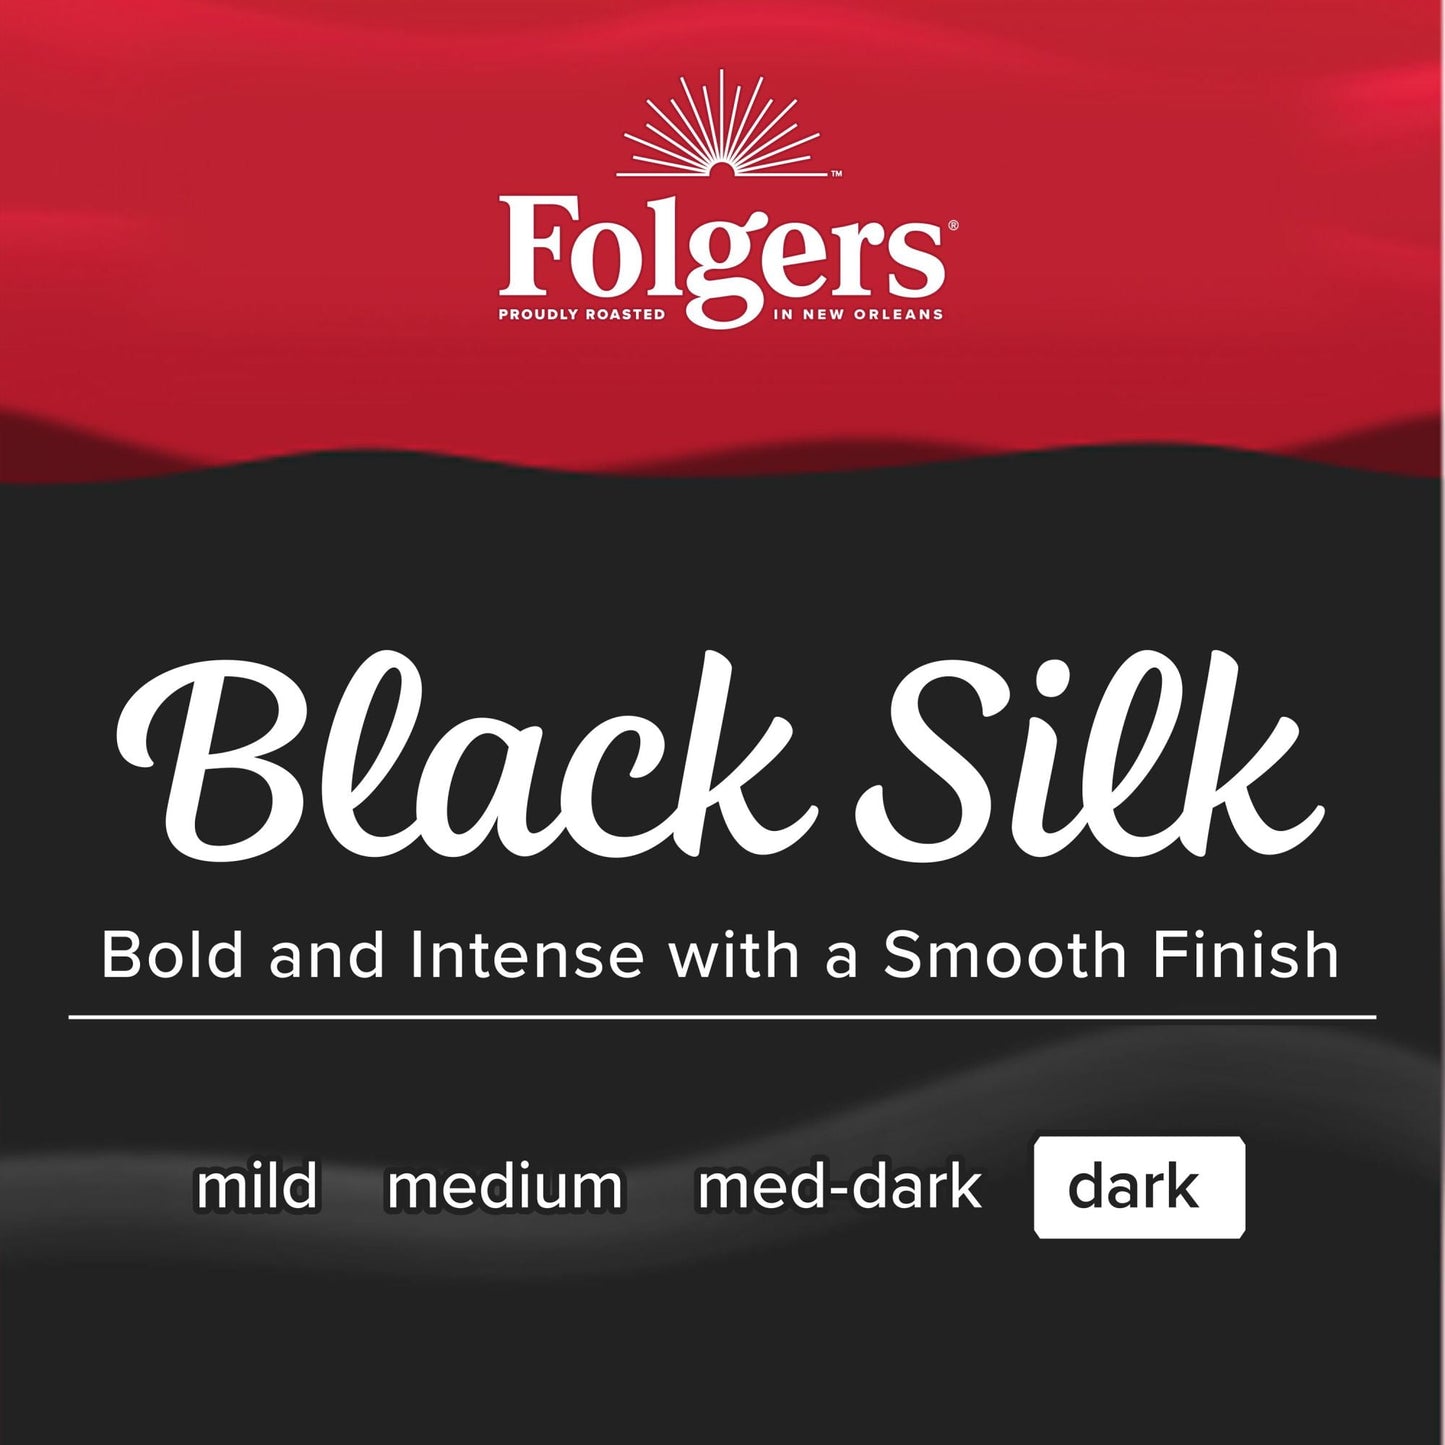 Folgers Black Silk, Dark Roast Coffee, Keurig K-Cup Pods, 24 Count Box